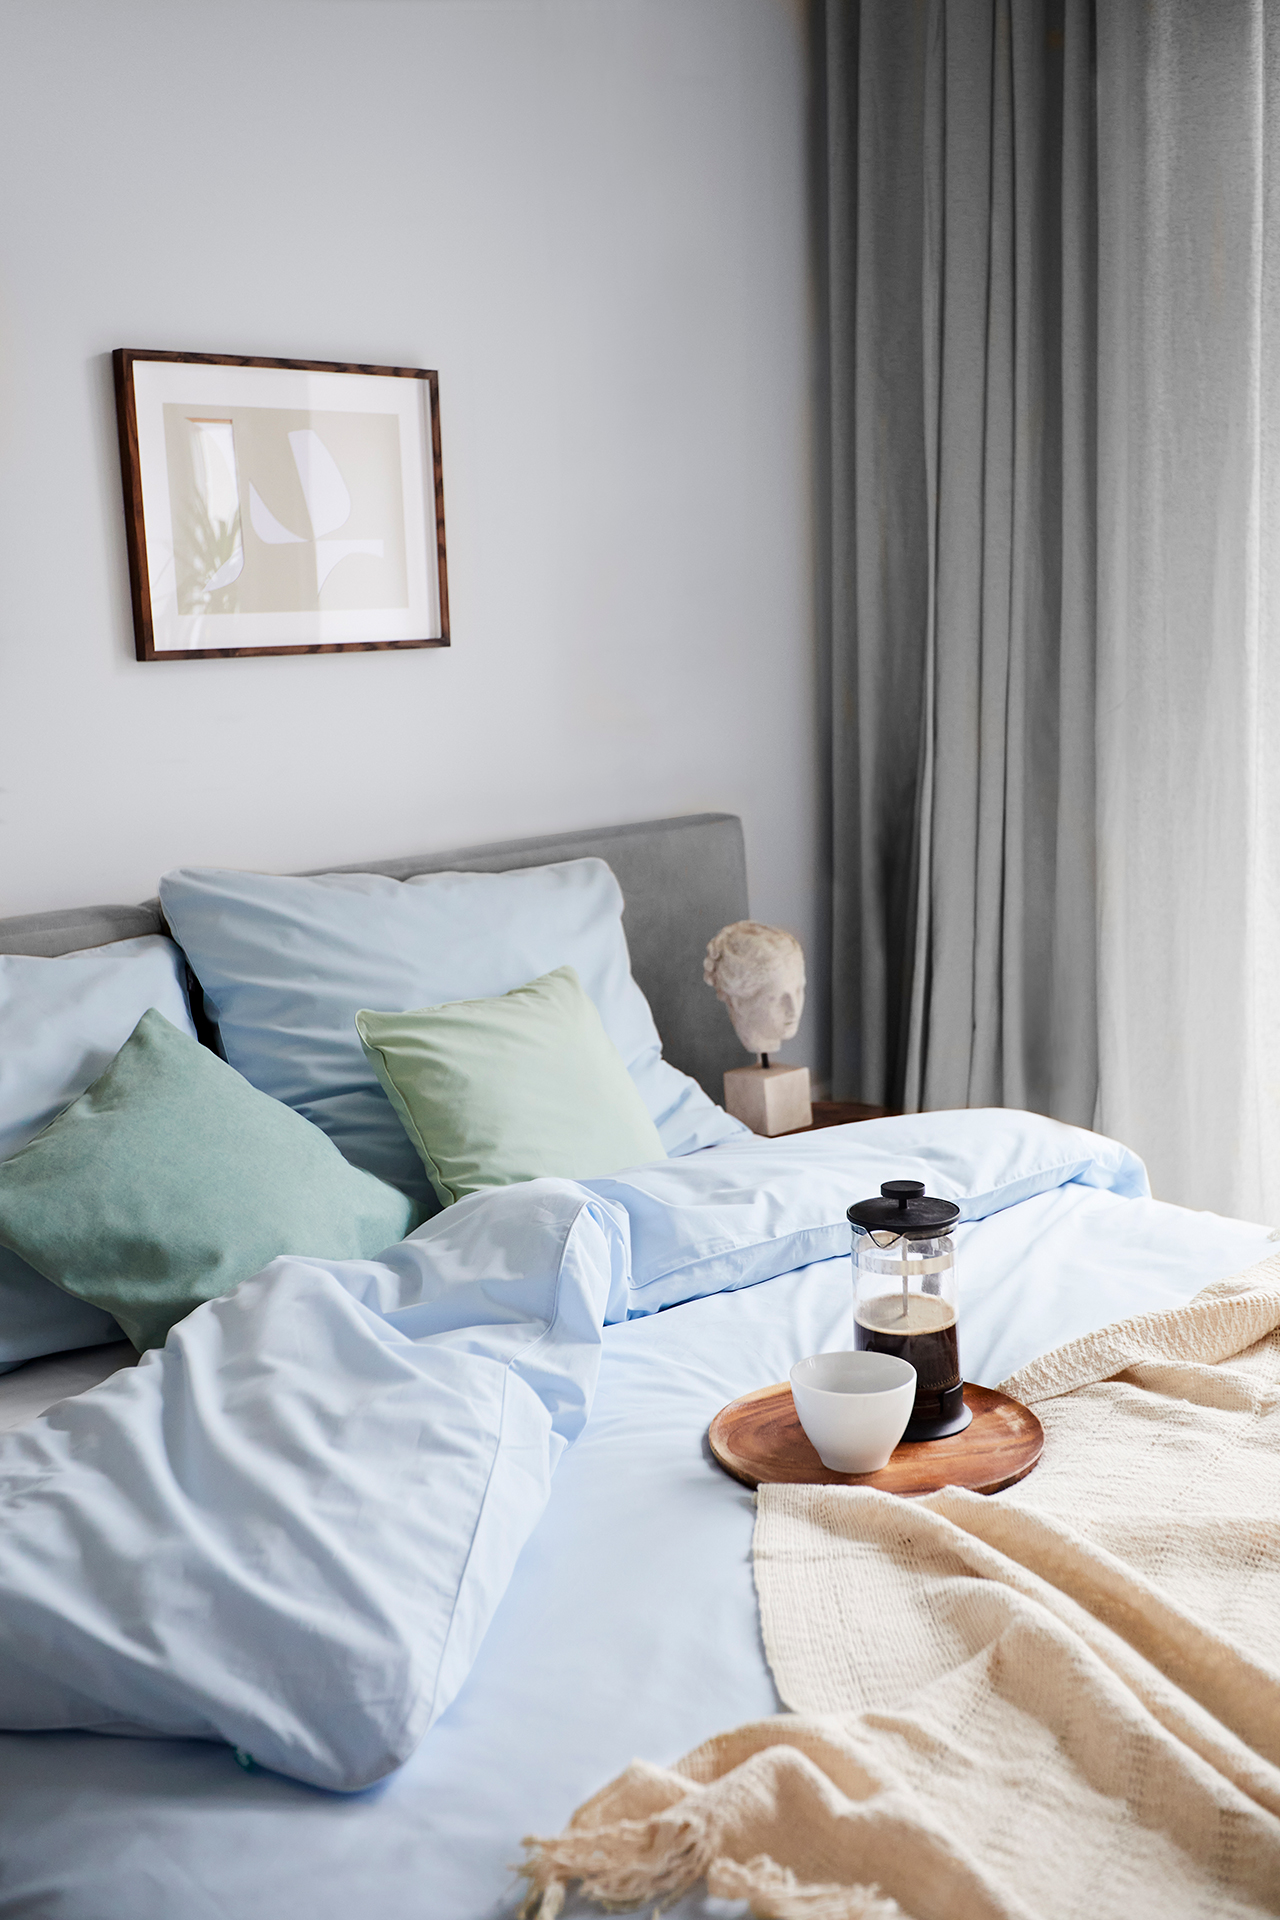 Kawa na podstawce, na łóżku z niebieską pościelą